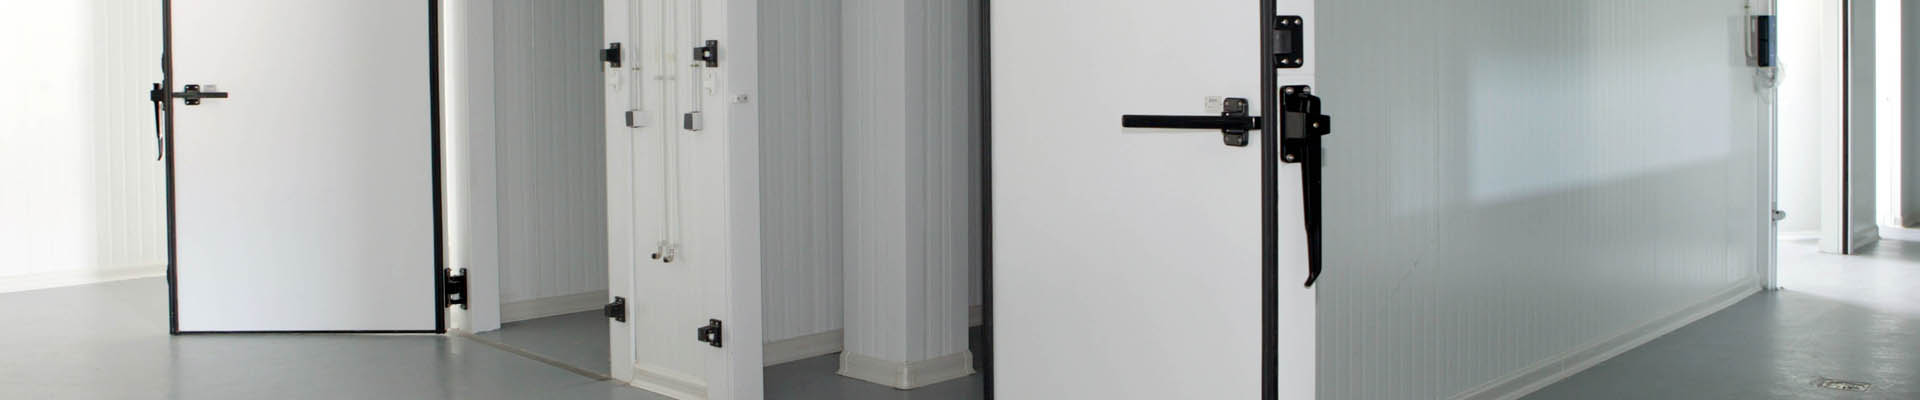 Puertas frigoríficas Doorfrig